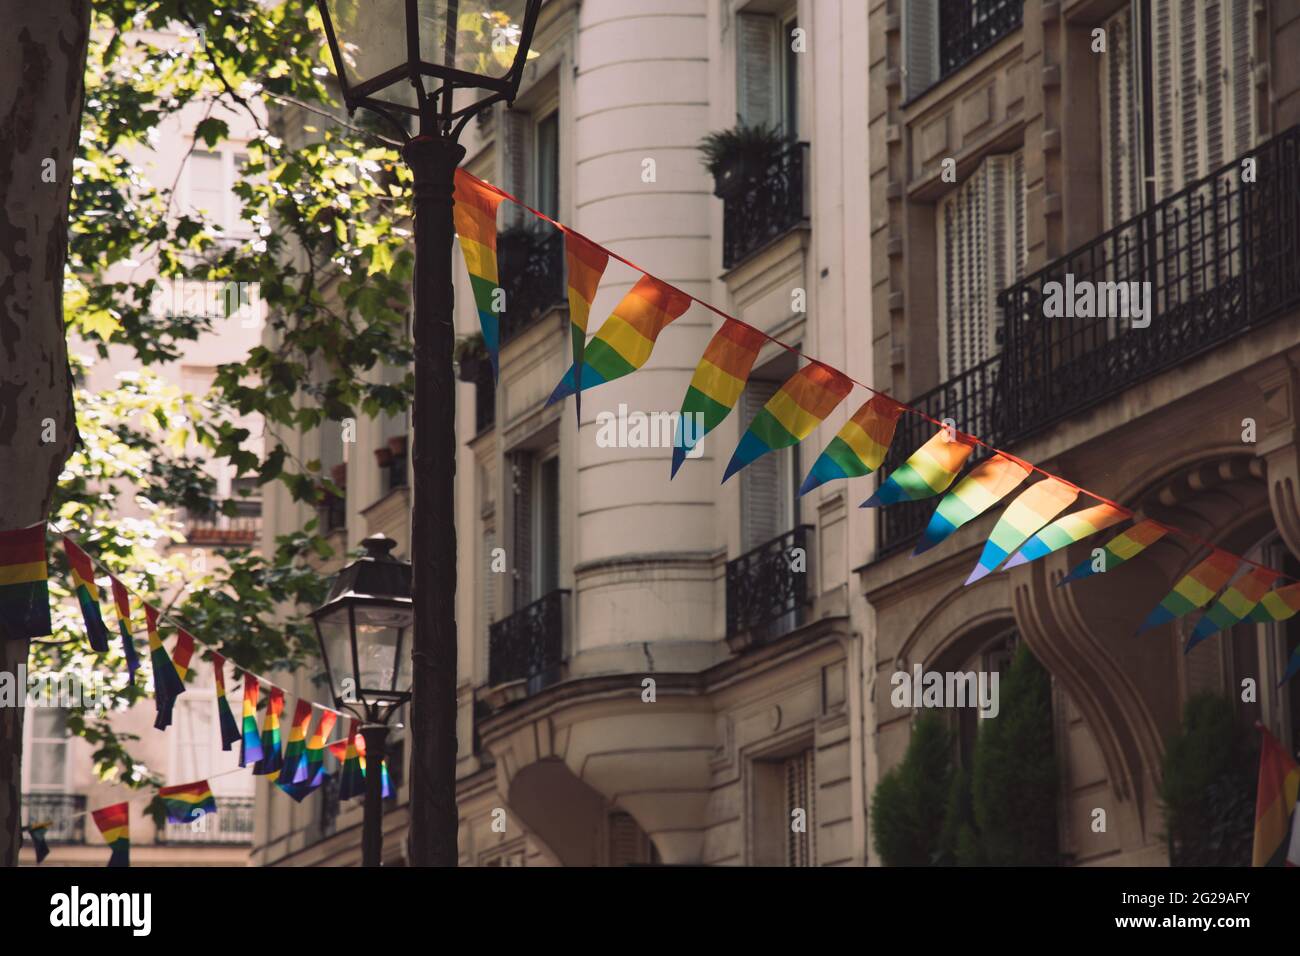 Décoration de bannières en forme de triangle dans les couleurs des drapeaux LGBTQ accrochés entre lanternes d'époque et maison en pierre ornée avec balcons. Gay Banque D'Images